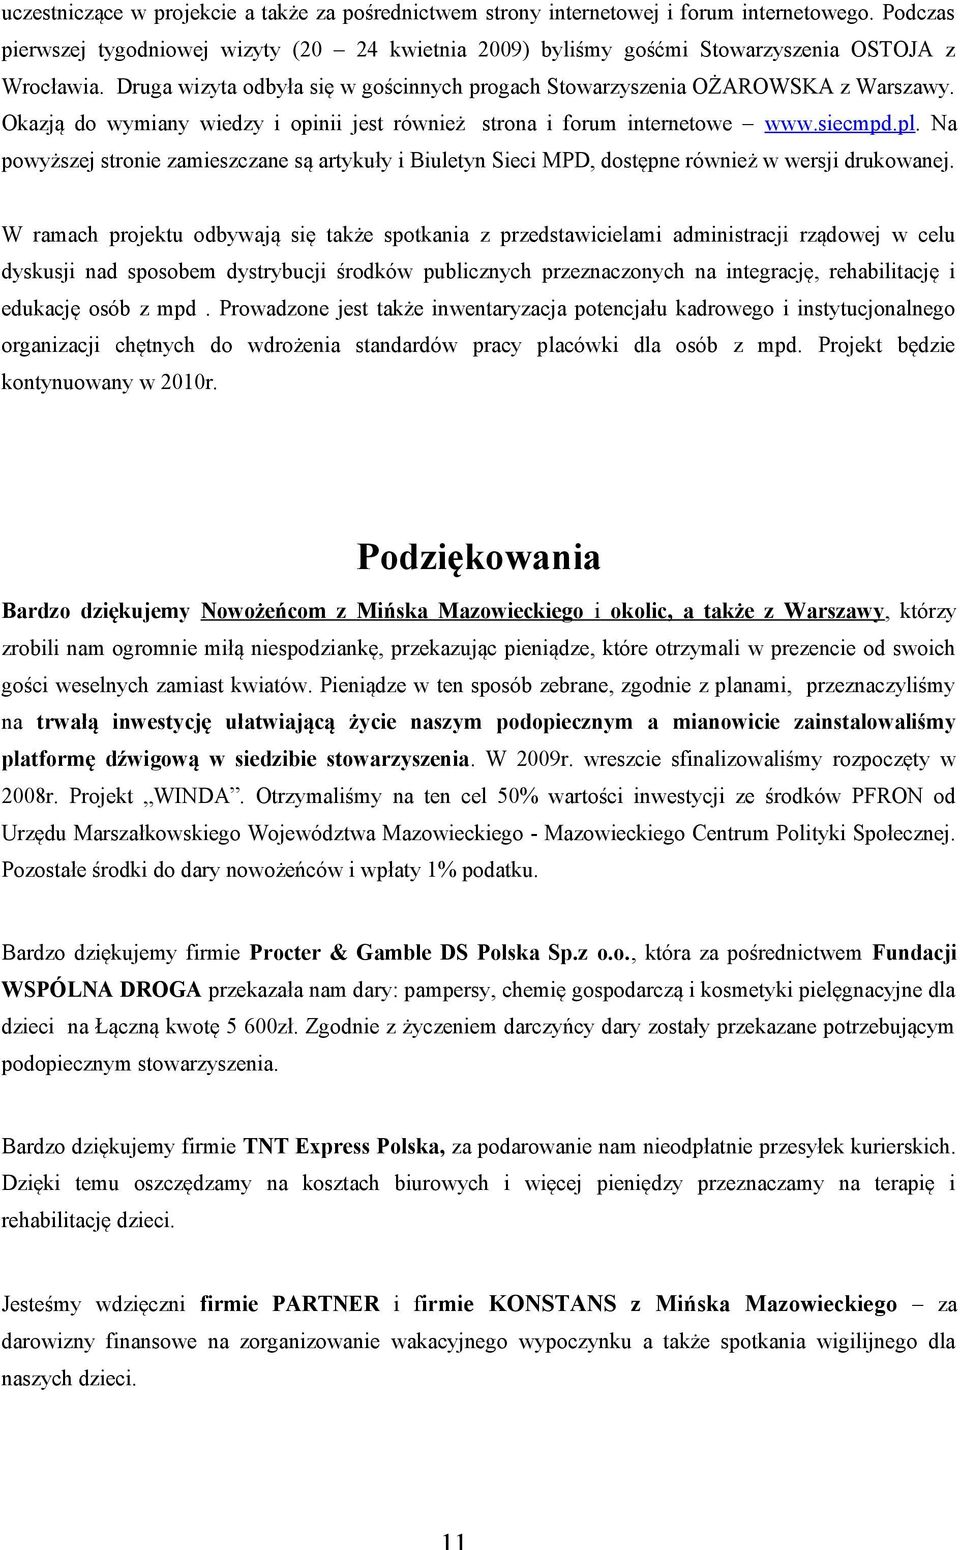 Okazją do wymiany wiedzy i opinii jest również strona i forum internetowe www.siecmpd.pl. Na powyższej stronie zamieszczane są artykuły i Biuletyn Sieci MPD, dostępne również w wersji drukowanej.